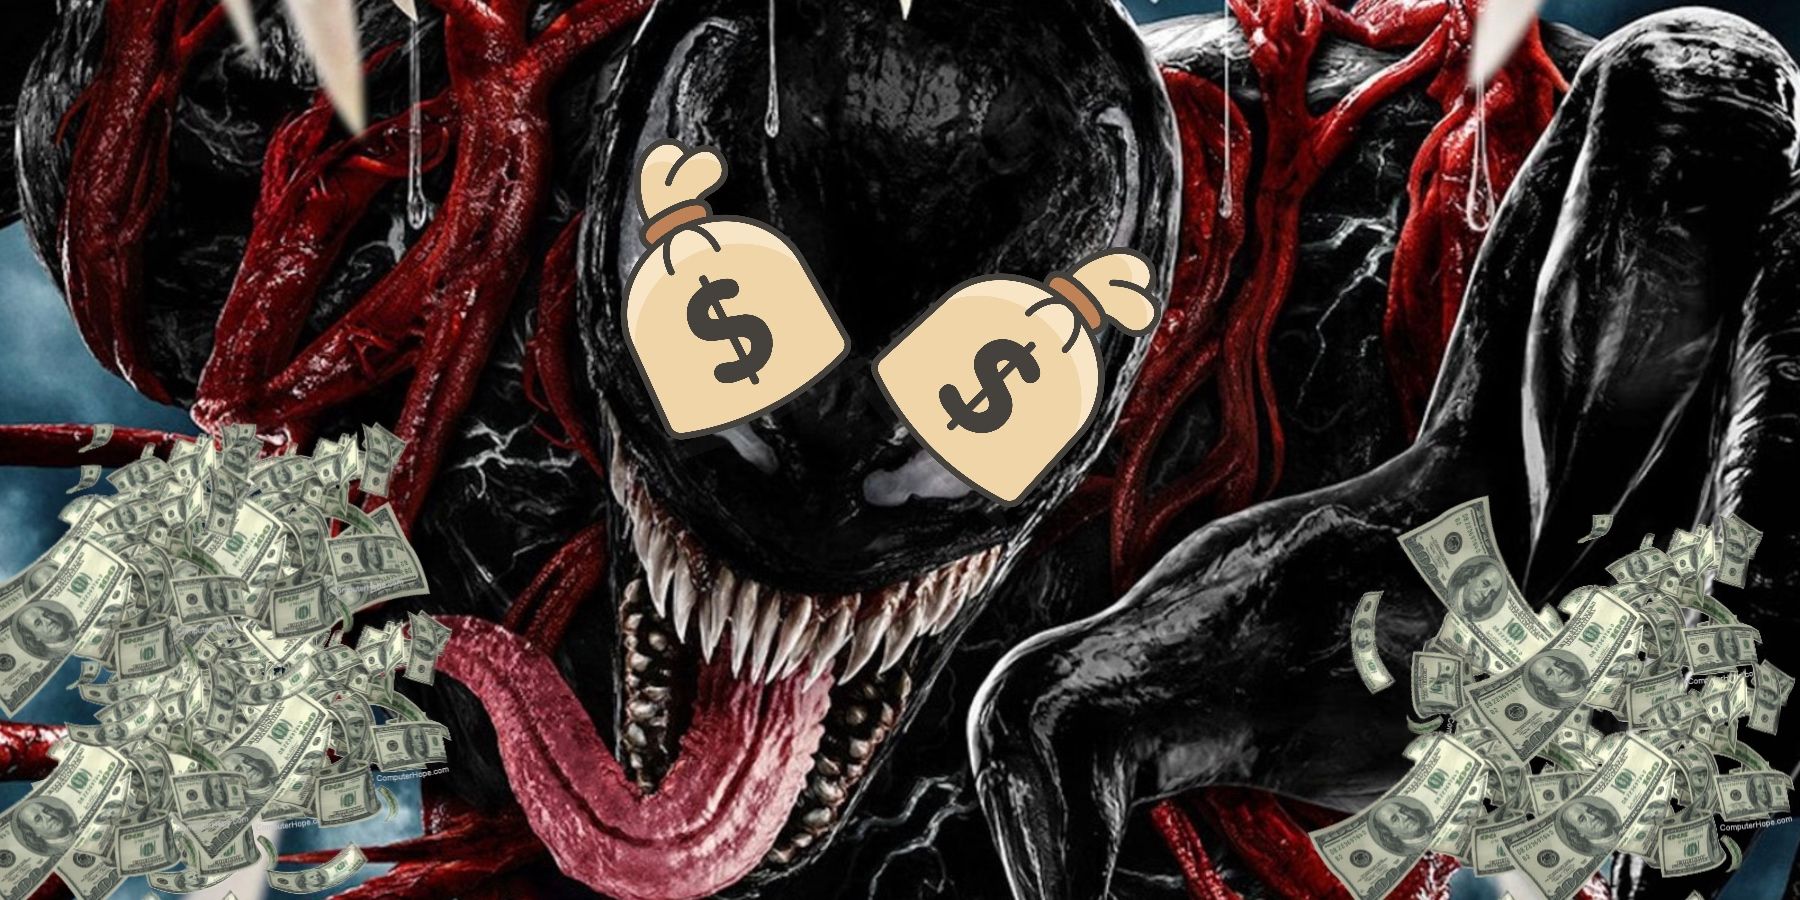 Venom: Let There Be Carnage zal naar verwachting debuteren op $ 60 miljoen plus